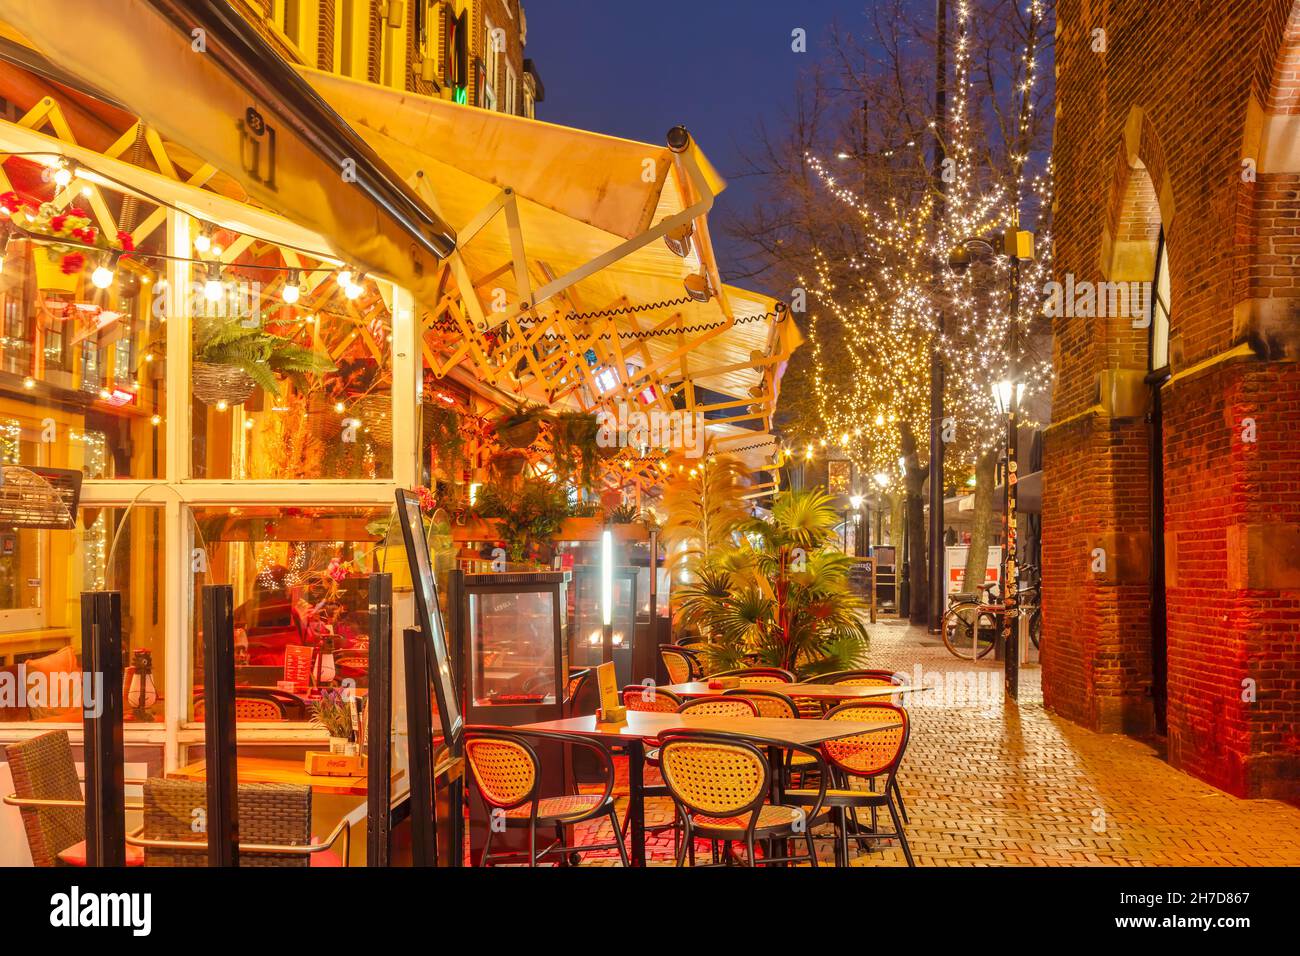 Alkmaar, Niederlande - 10. November 2021: Blick auf den alten holländischen Waagplein Platz mit Bars, Restaurants und weihnachtsschmuck Stockfoto